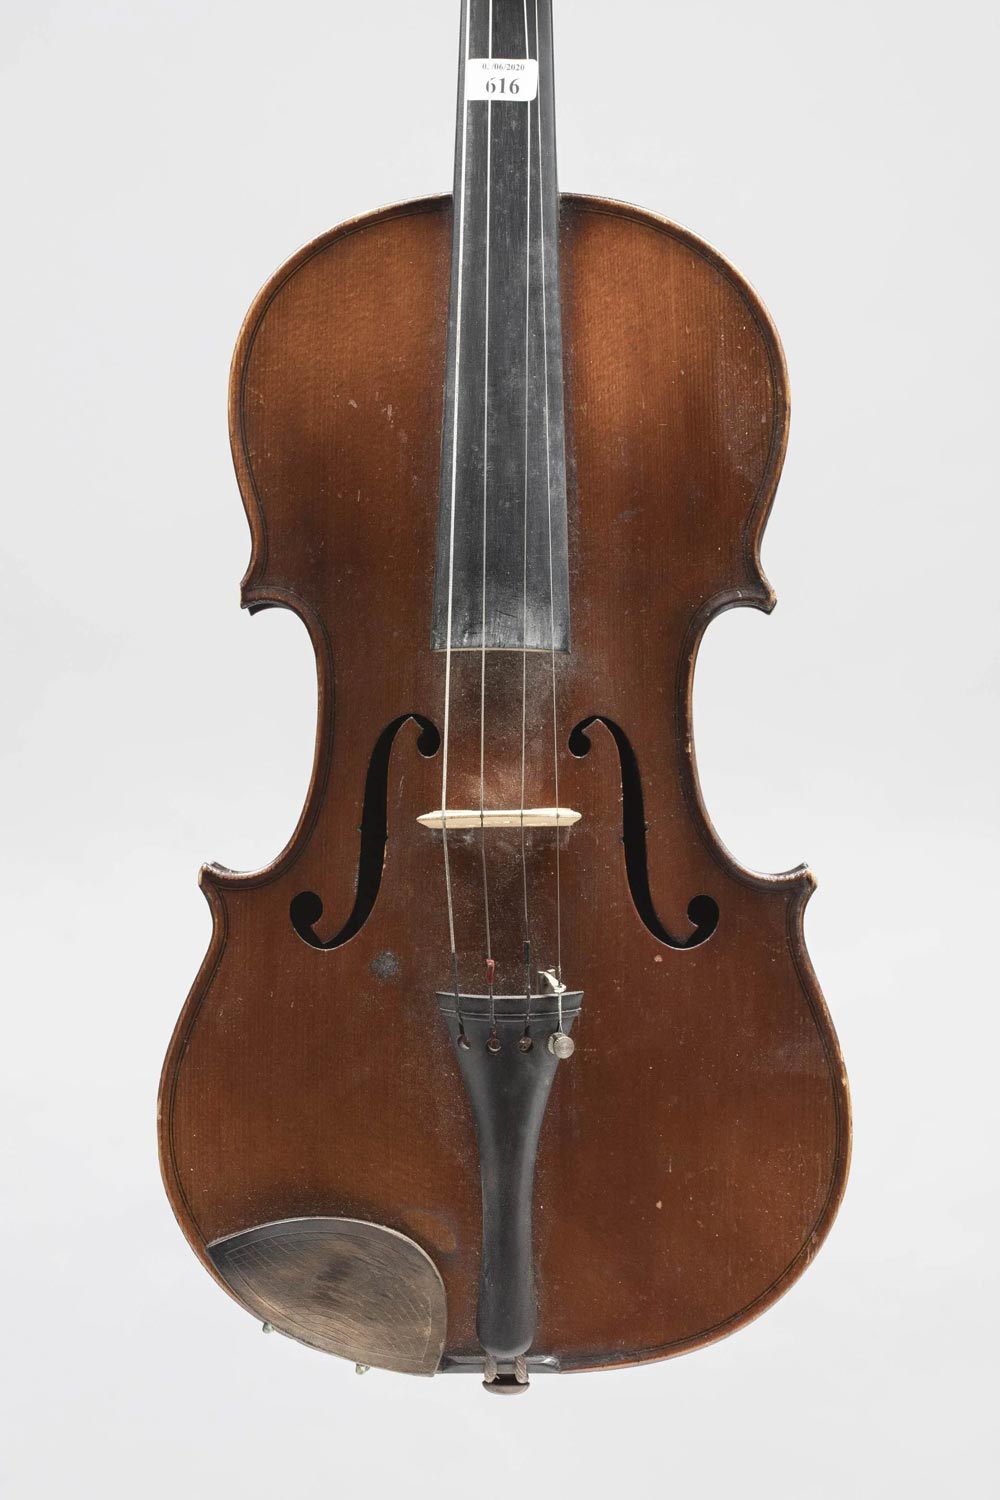 Violon de LABERTE HUMBERT Instrument mis en vente par Vichy Enchères le 24 septembre 2020 © Vichy Enchères